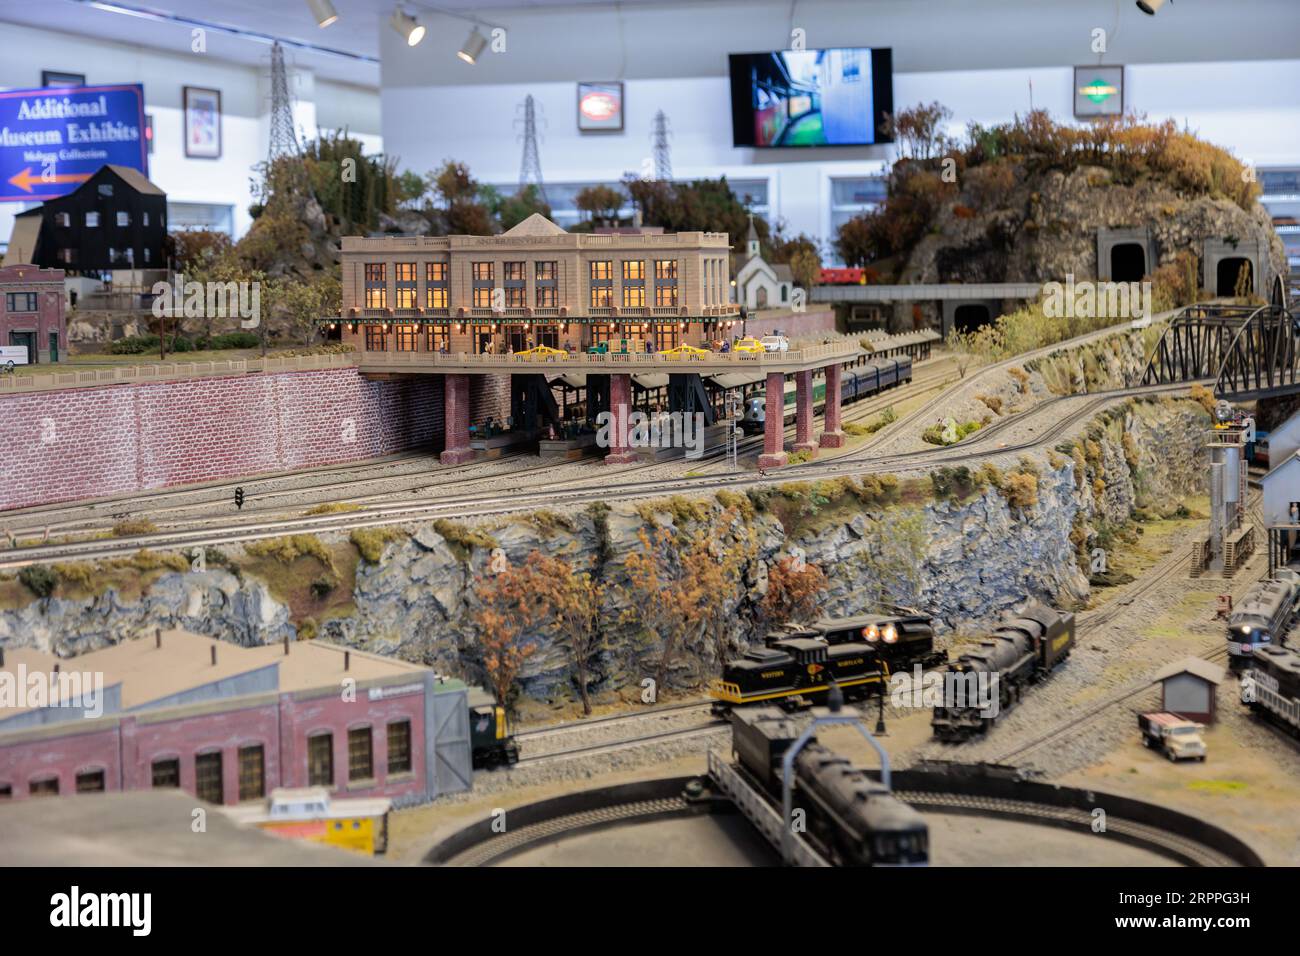 Model train layout in the Lionel Model Train Museum in Bryson City, North Carolina Stock Photo